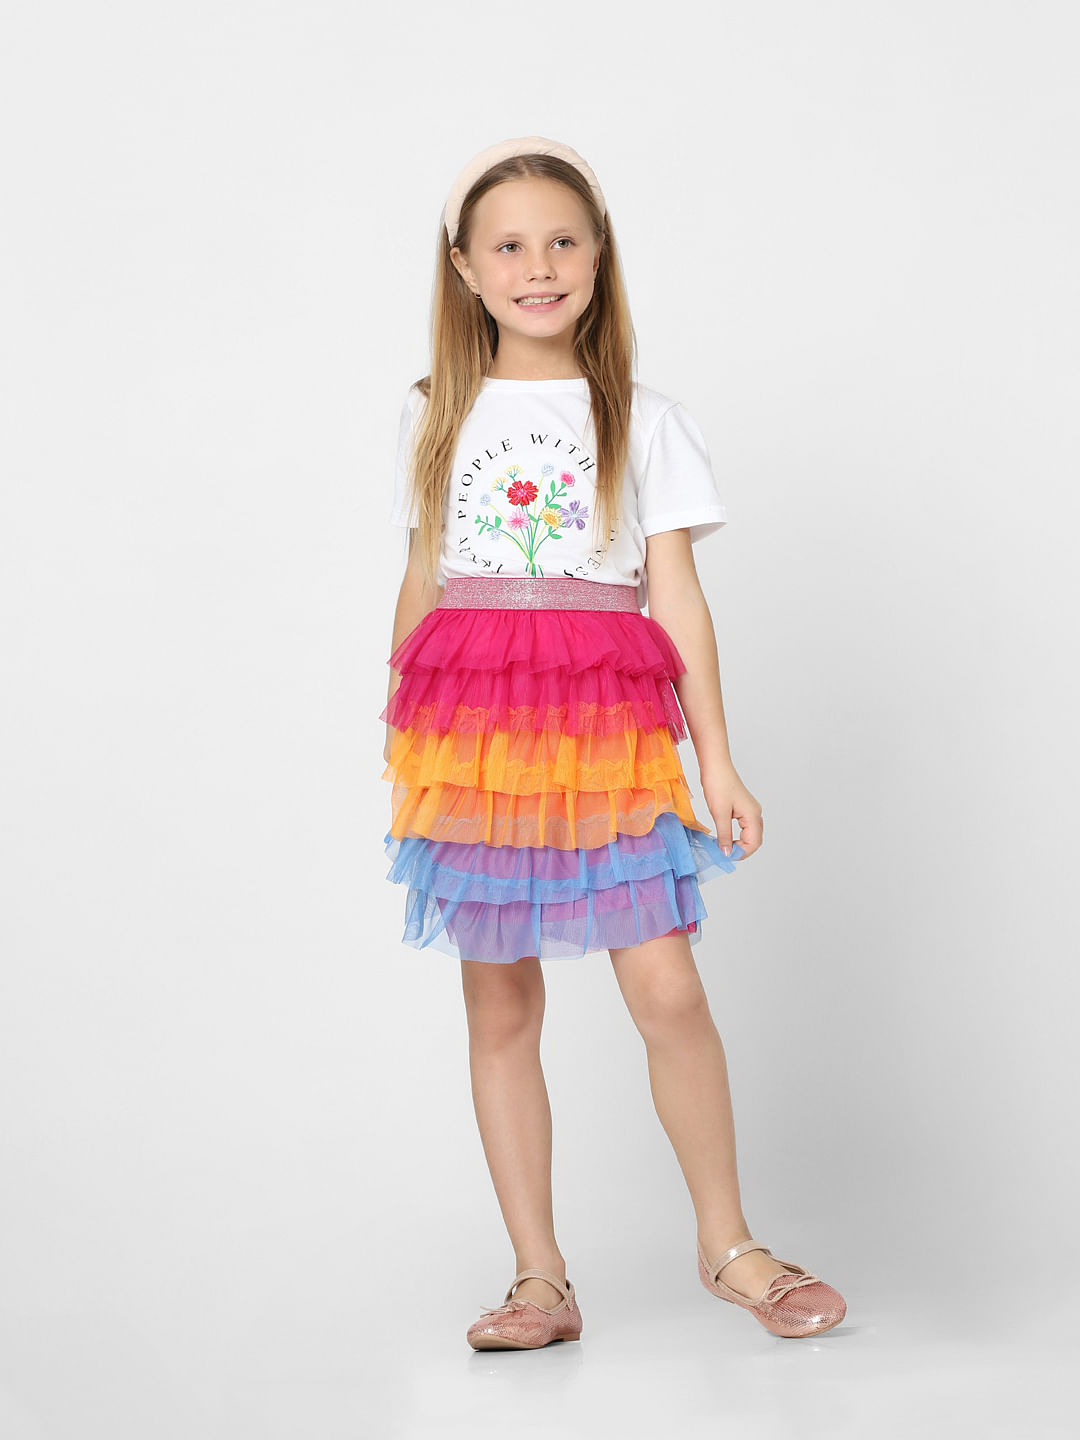 Alphabeys White Top  Mid Thigh Pink Net Skirt For GirlsGlobal Artisans